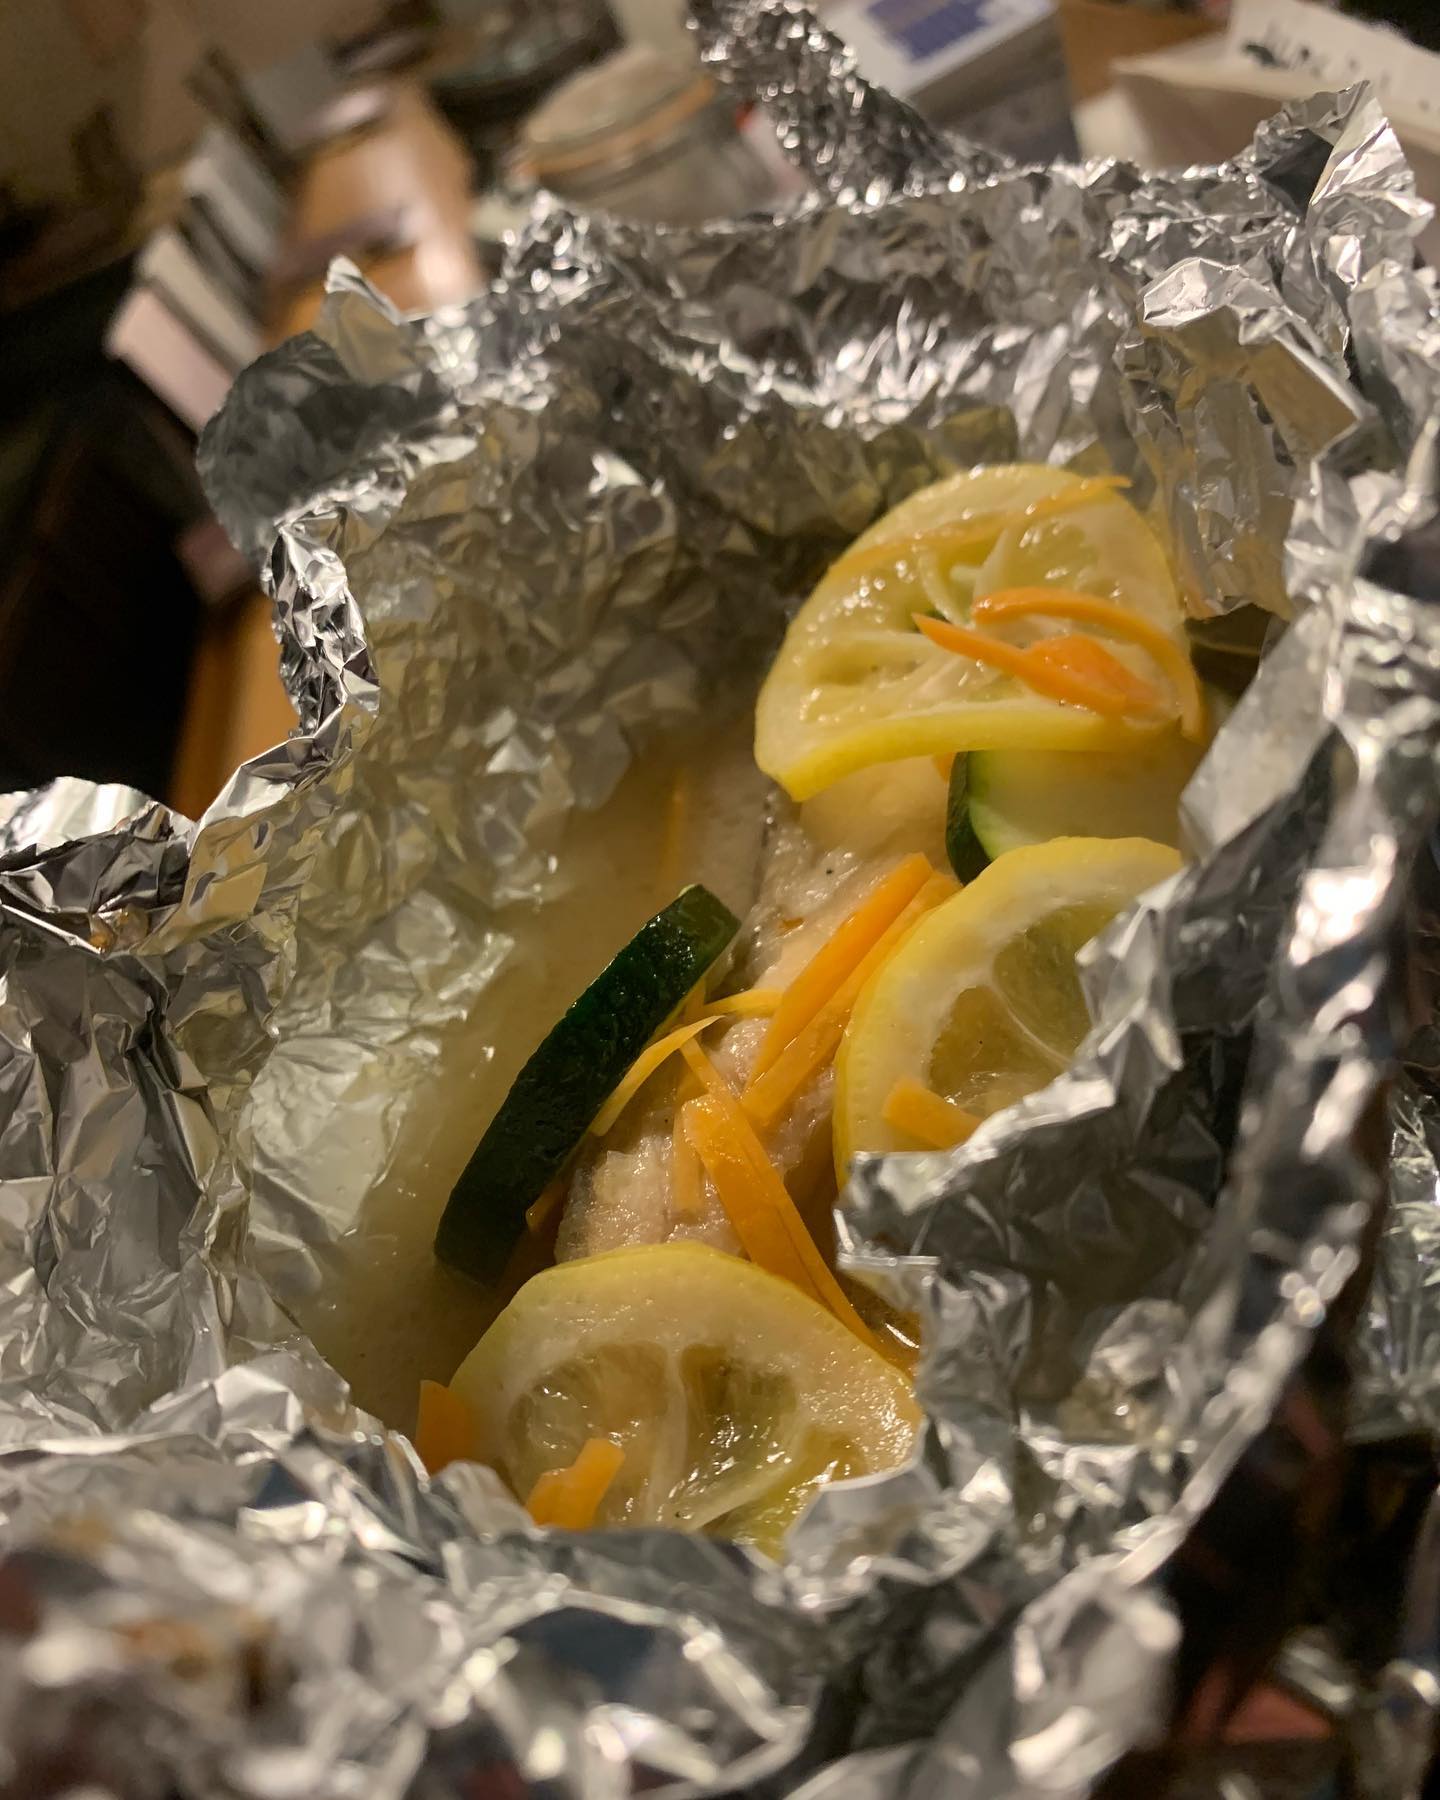 夏の野菜が美味しくなってきまた
ズッキーニとレモンでさっぱり仕上げた鮭のホイル包み焼きレモンの酸っぱさで鮭が際立つ🍋